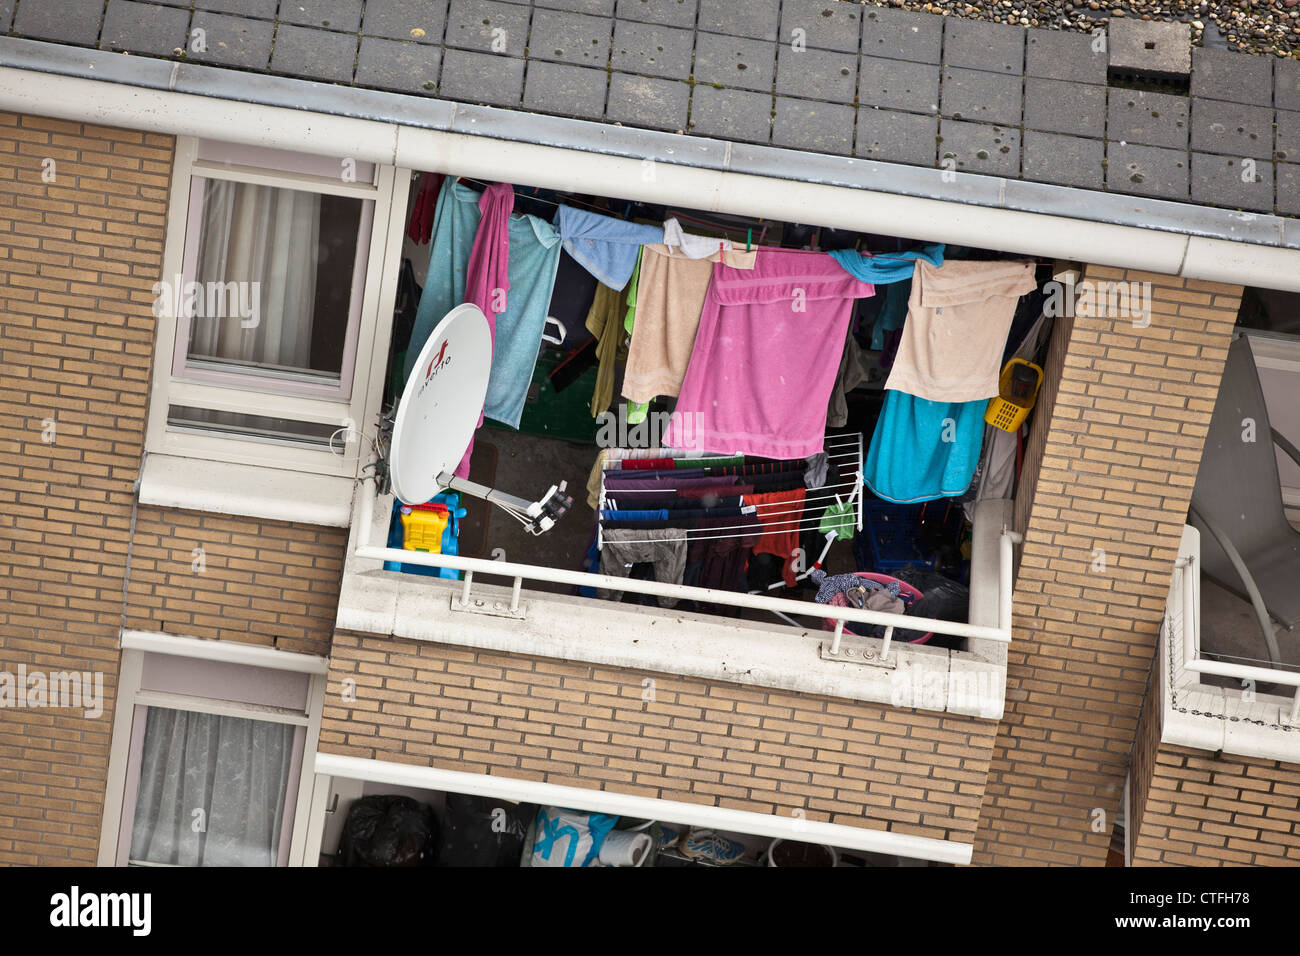 Die Niederlande, Den Haag, den Haag, Wohnquartier. Satellitenschüssel. Trocknen von Kleidung im Fenster. Stockfoto